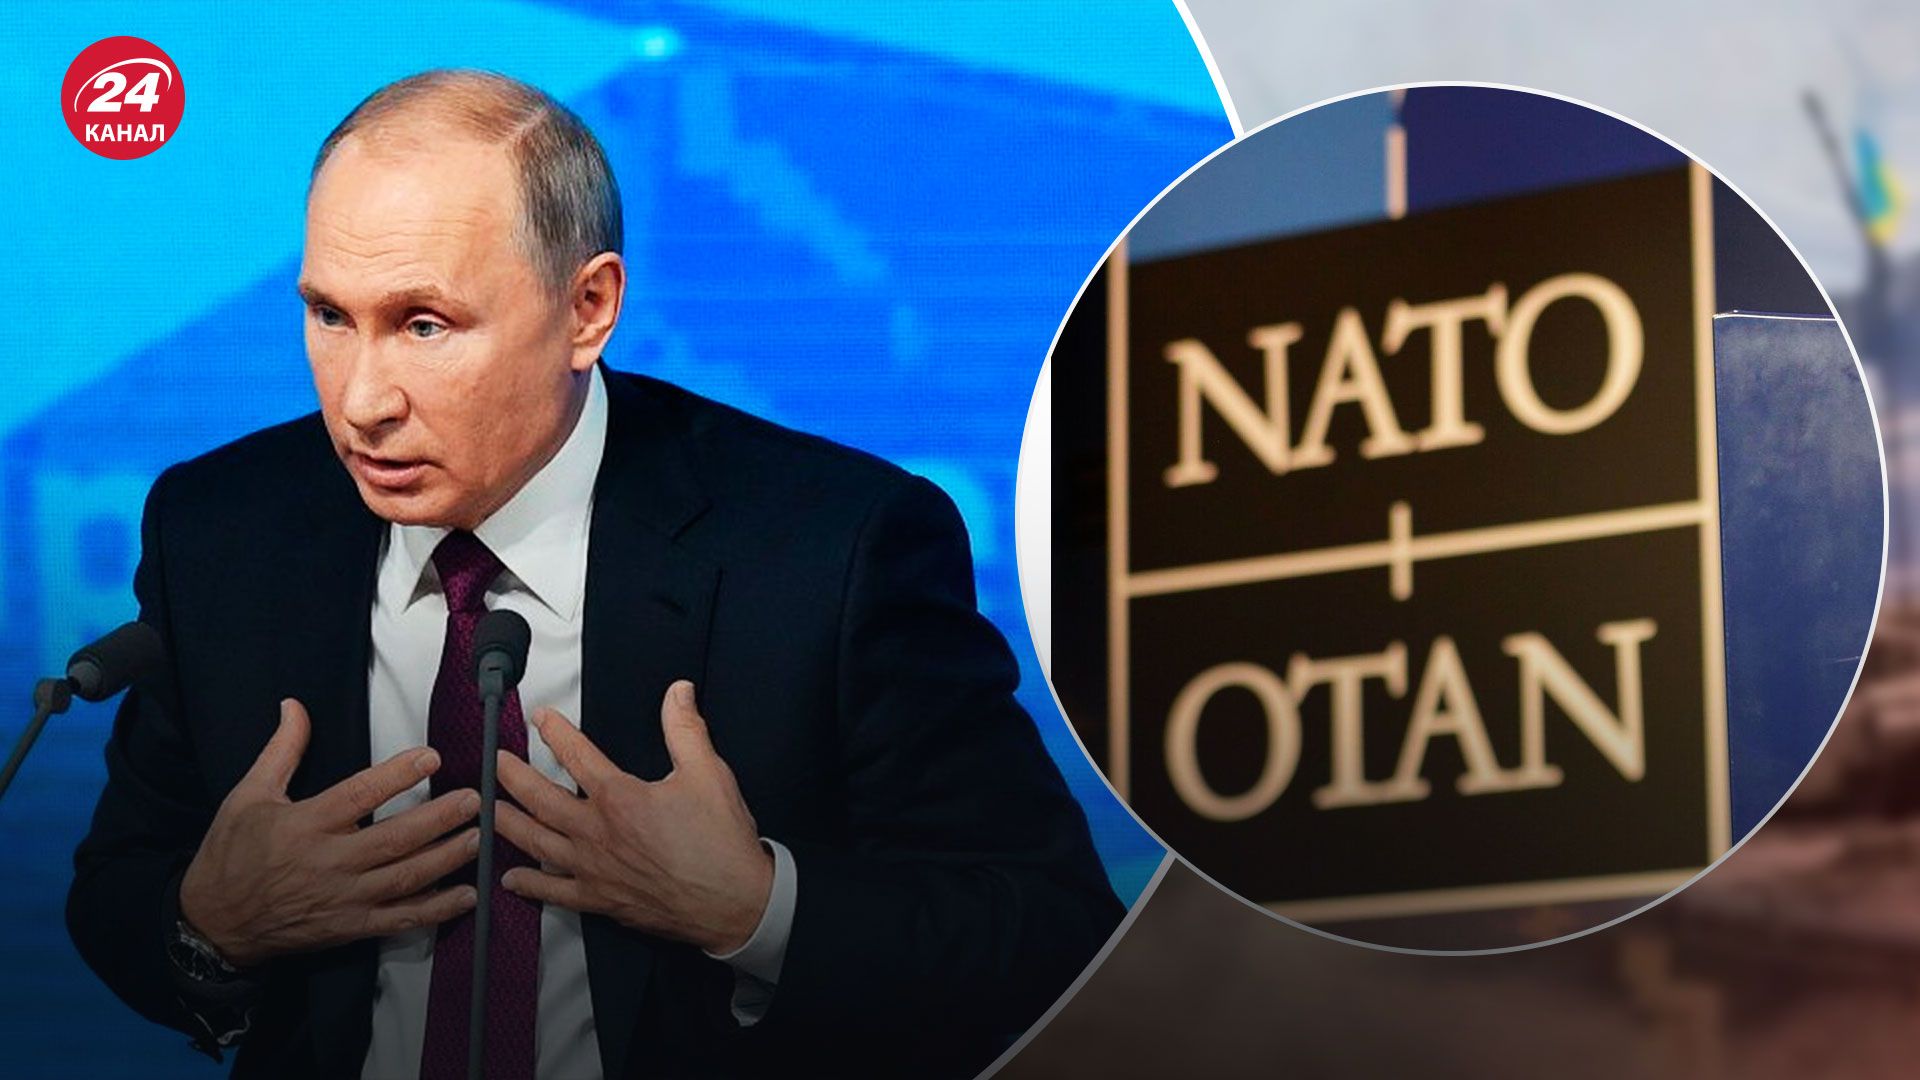 Путін може заявити у зверненні, що воює проти НАТО - як це вплине на Україну - 24 Канал